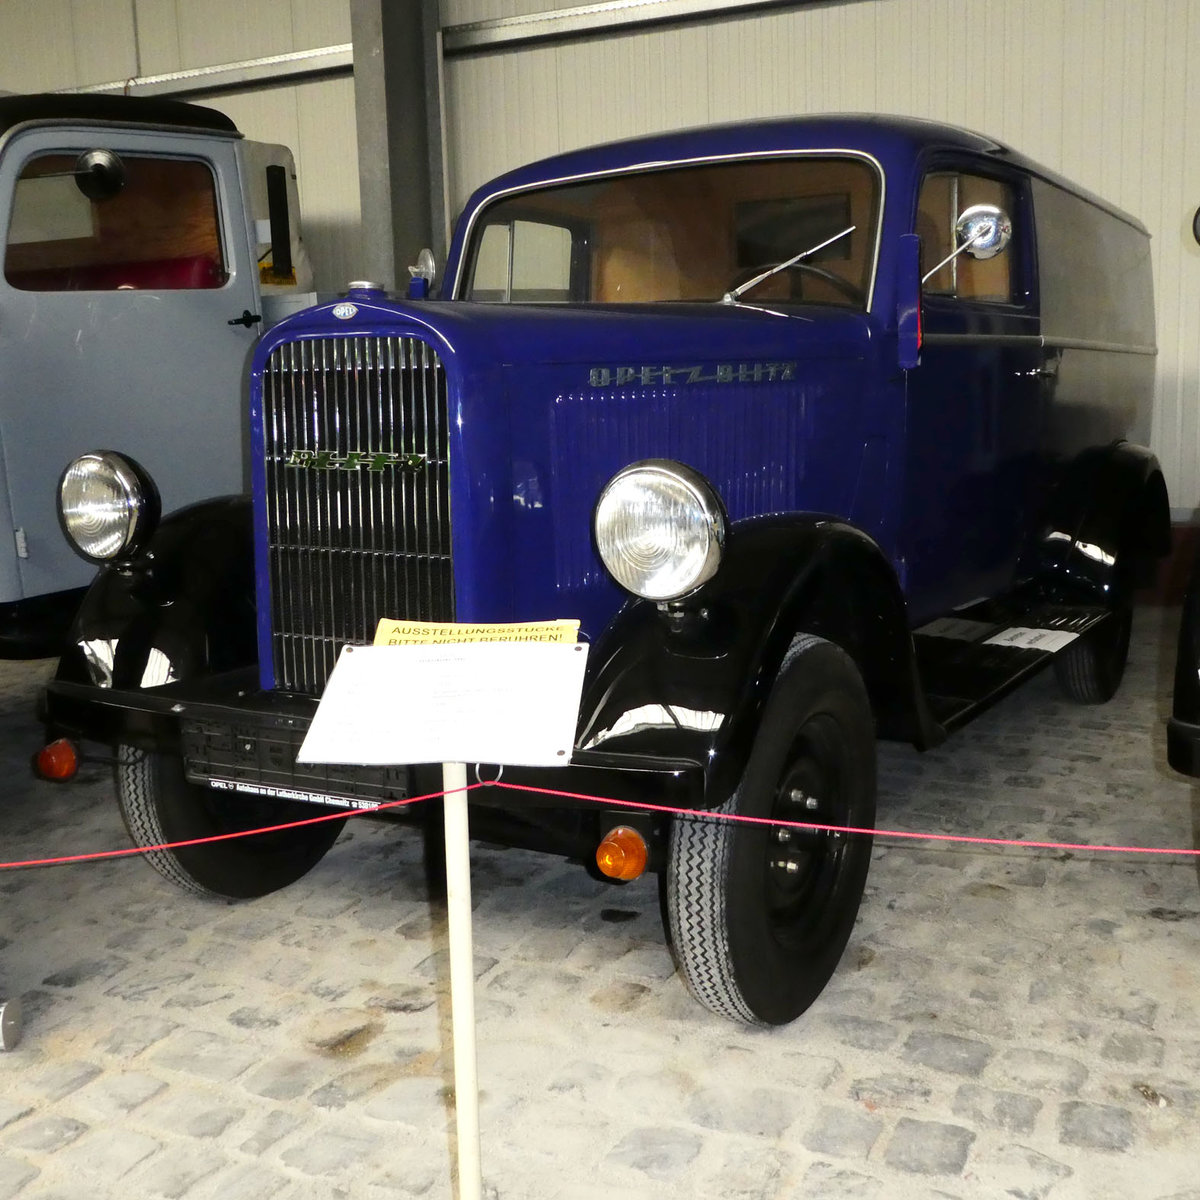 =Opel Blitz 1,5-29, Bj. 1939, 1488 ccm, 37 PS, gesehen im sächsischen Nutzfahrzeugmuseum in Hartmannsdorf im Juli 2016